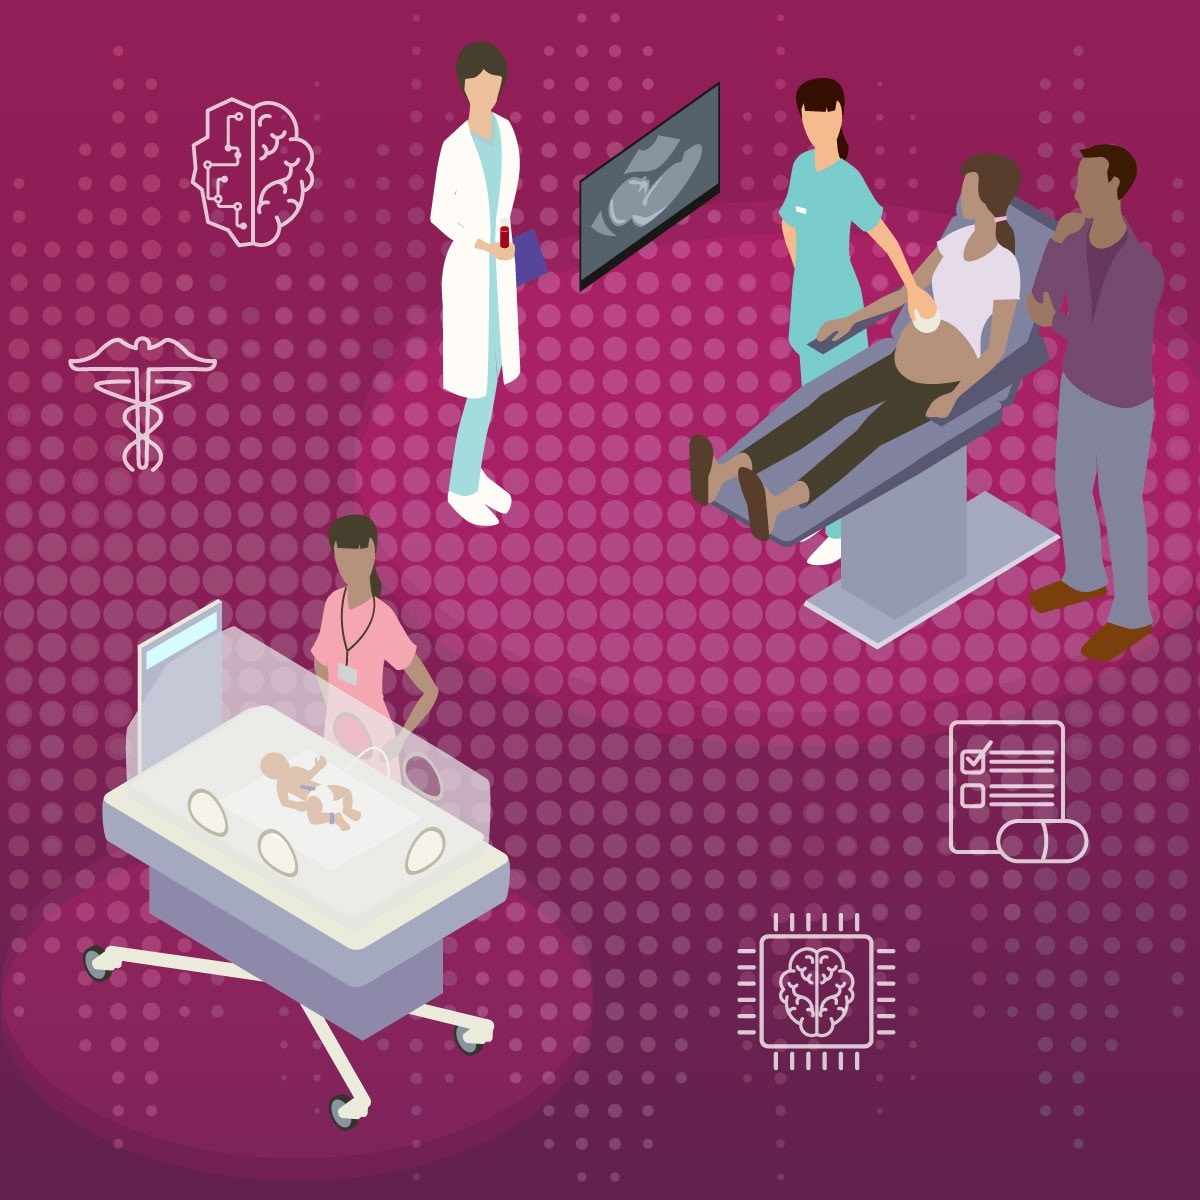 maternal health through AI